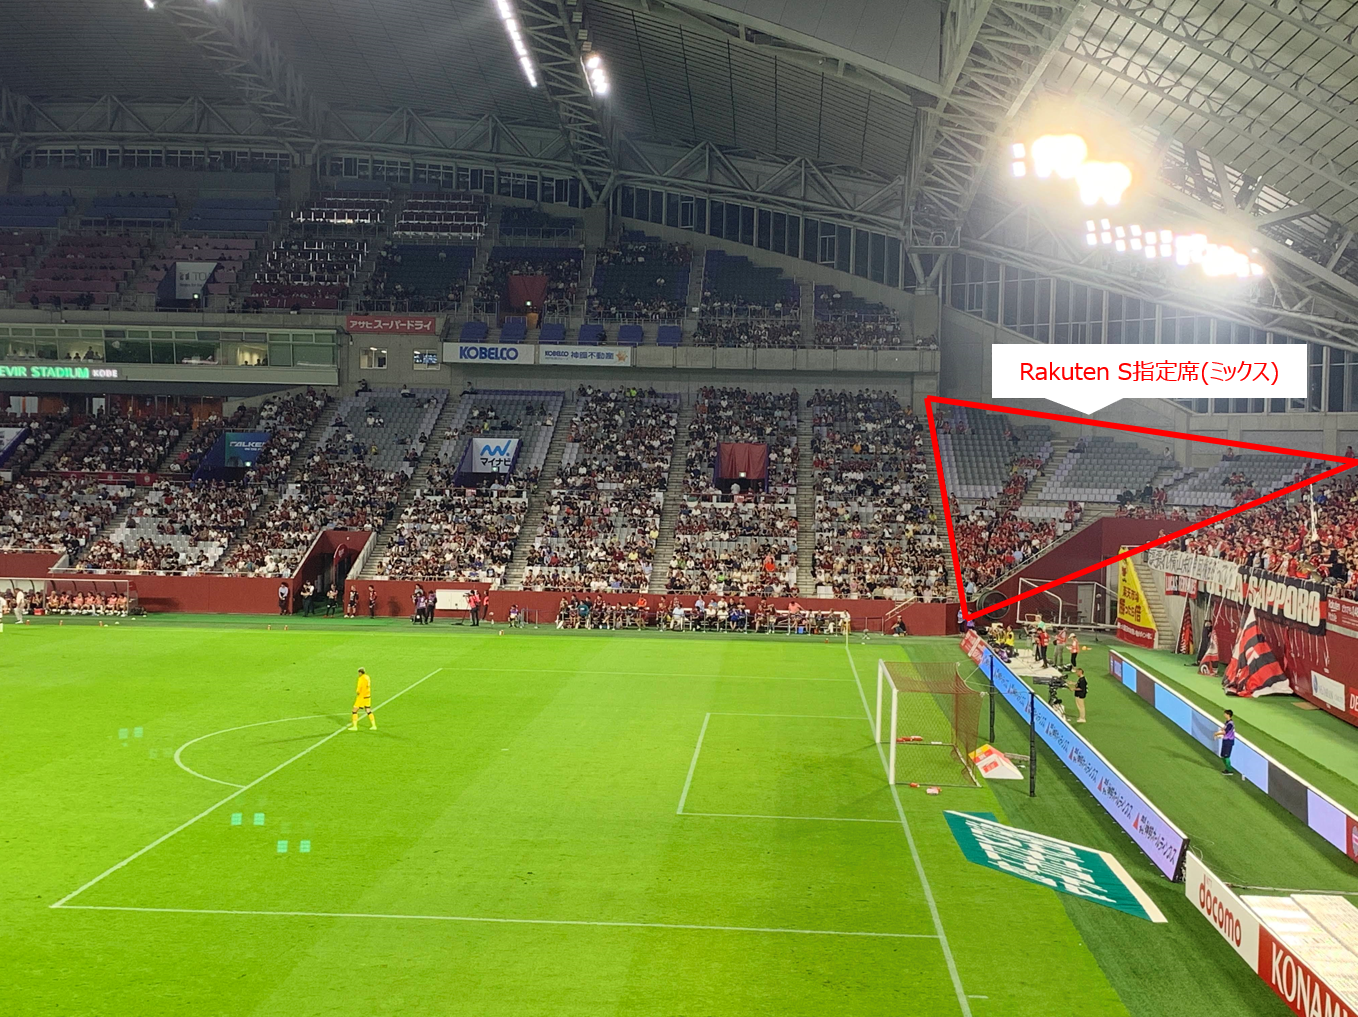 ノエビアスタジアム神戸の座席情報 見え方 おすすめ座席を解説します